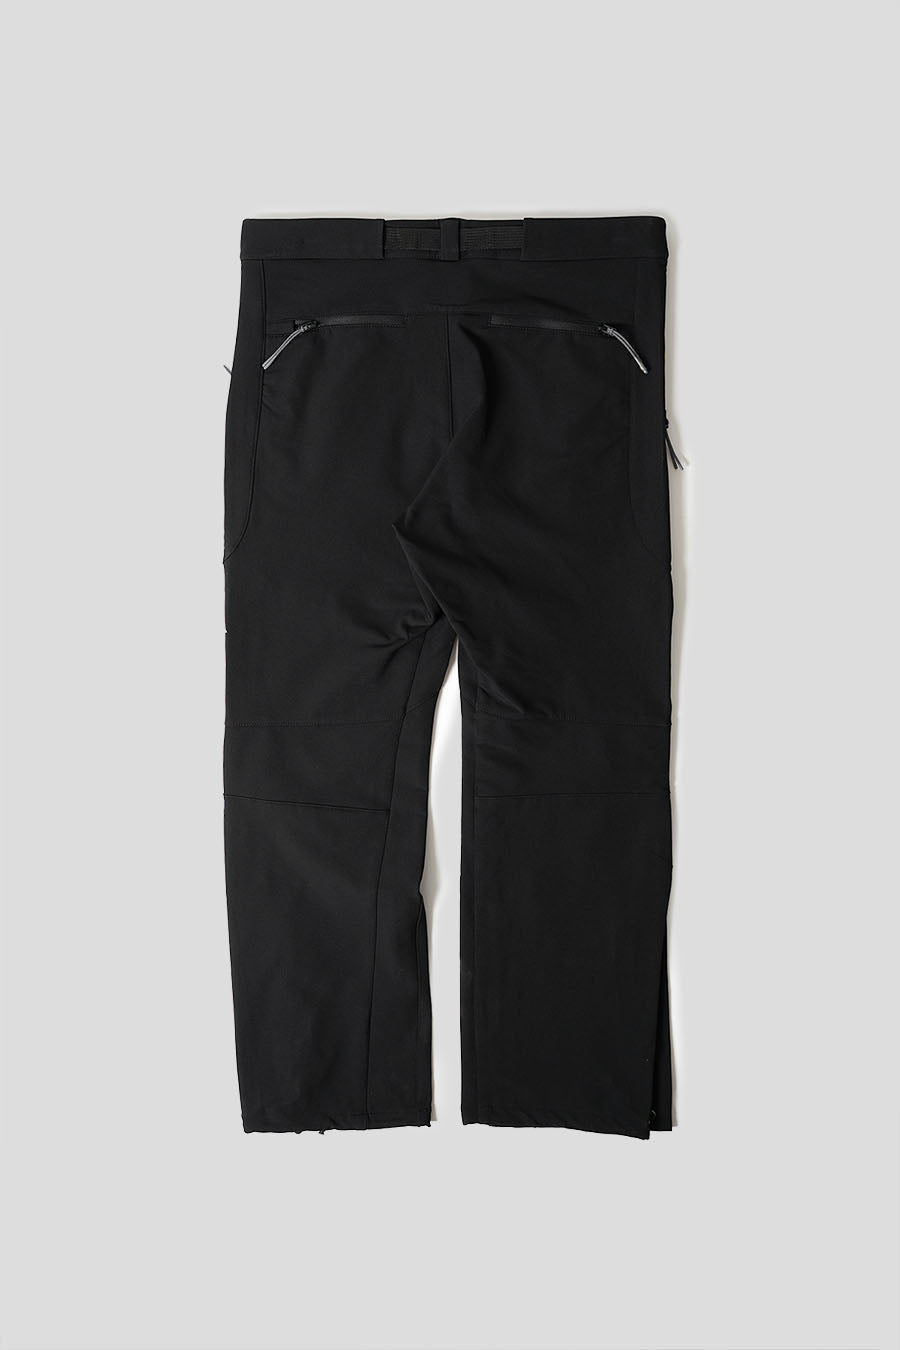 最先端 【Sale】ROA Technical Trousers黒 パンツhiking パンツ - www 